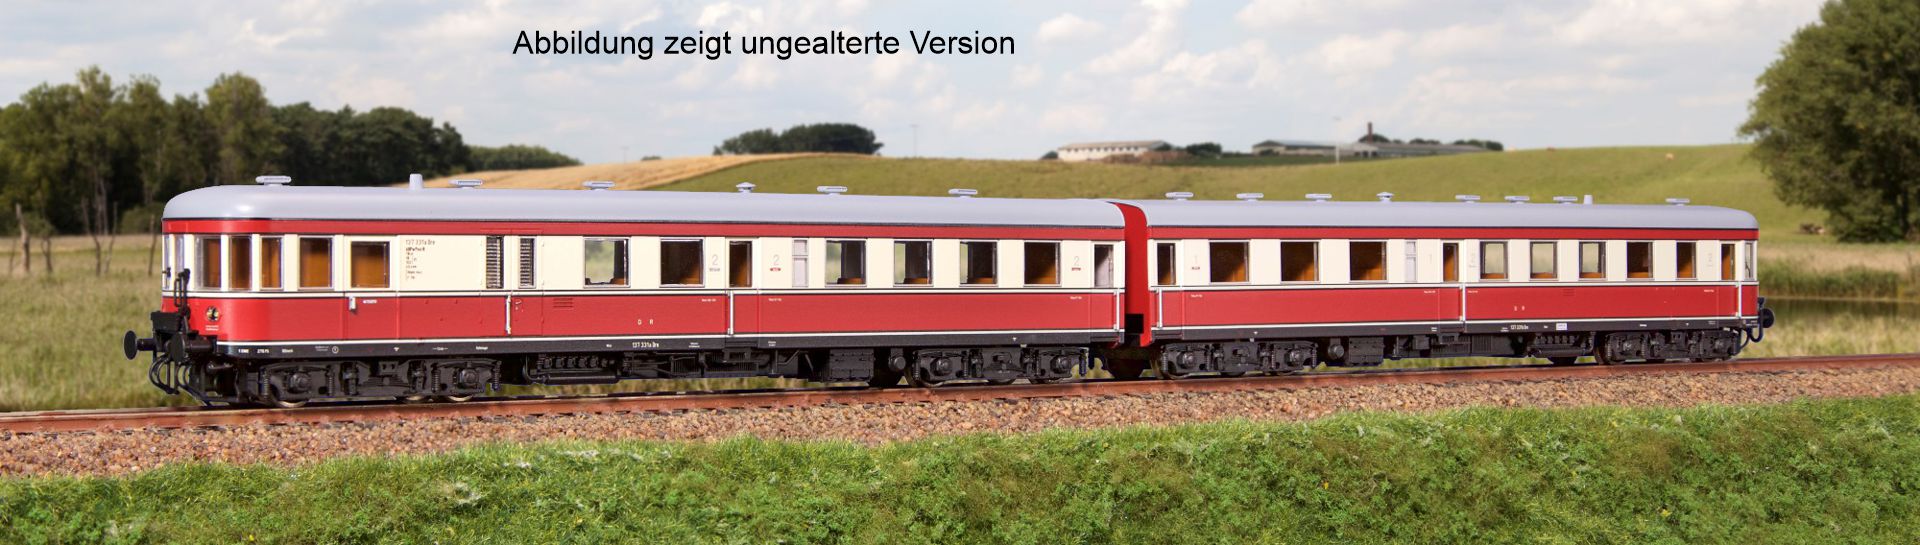 Kres 51016211 - Triebzug VT 137 Bauart 'Stettin', DR, Ep.III, DC-Digital, gealtert